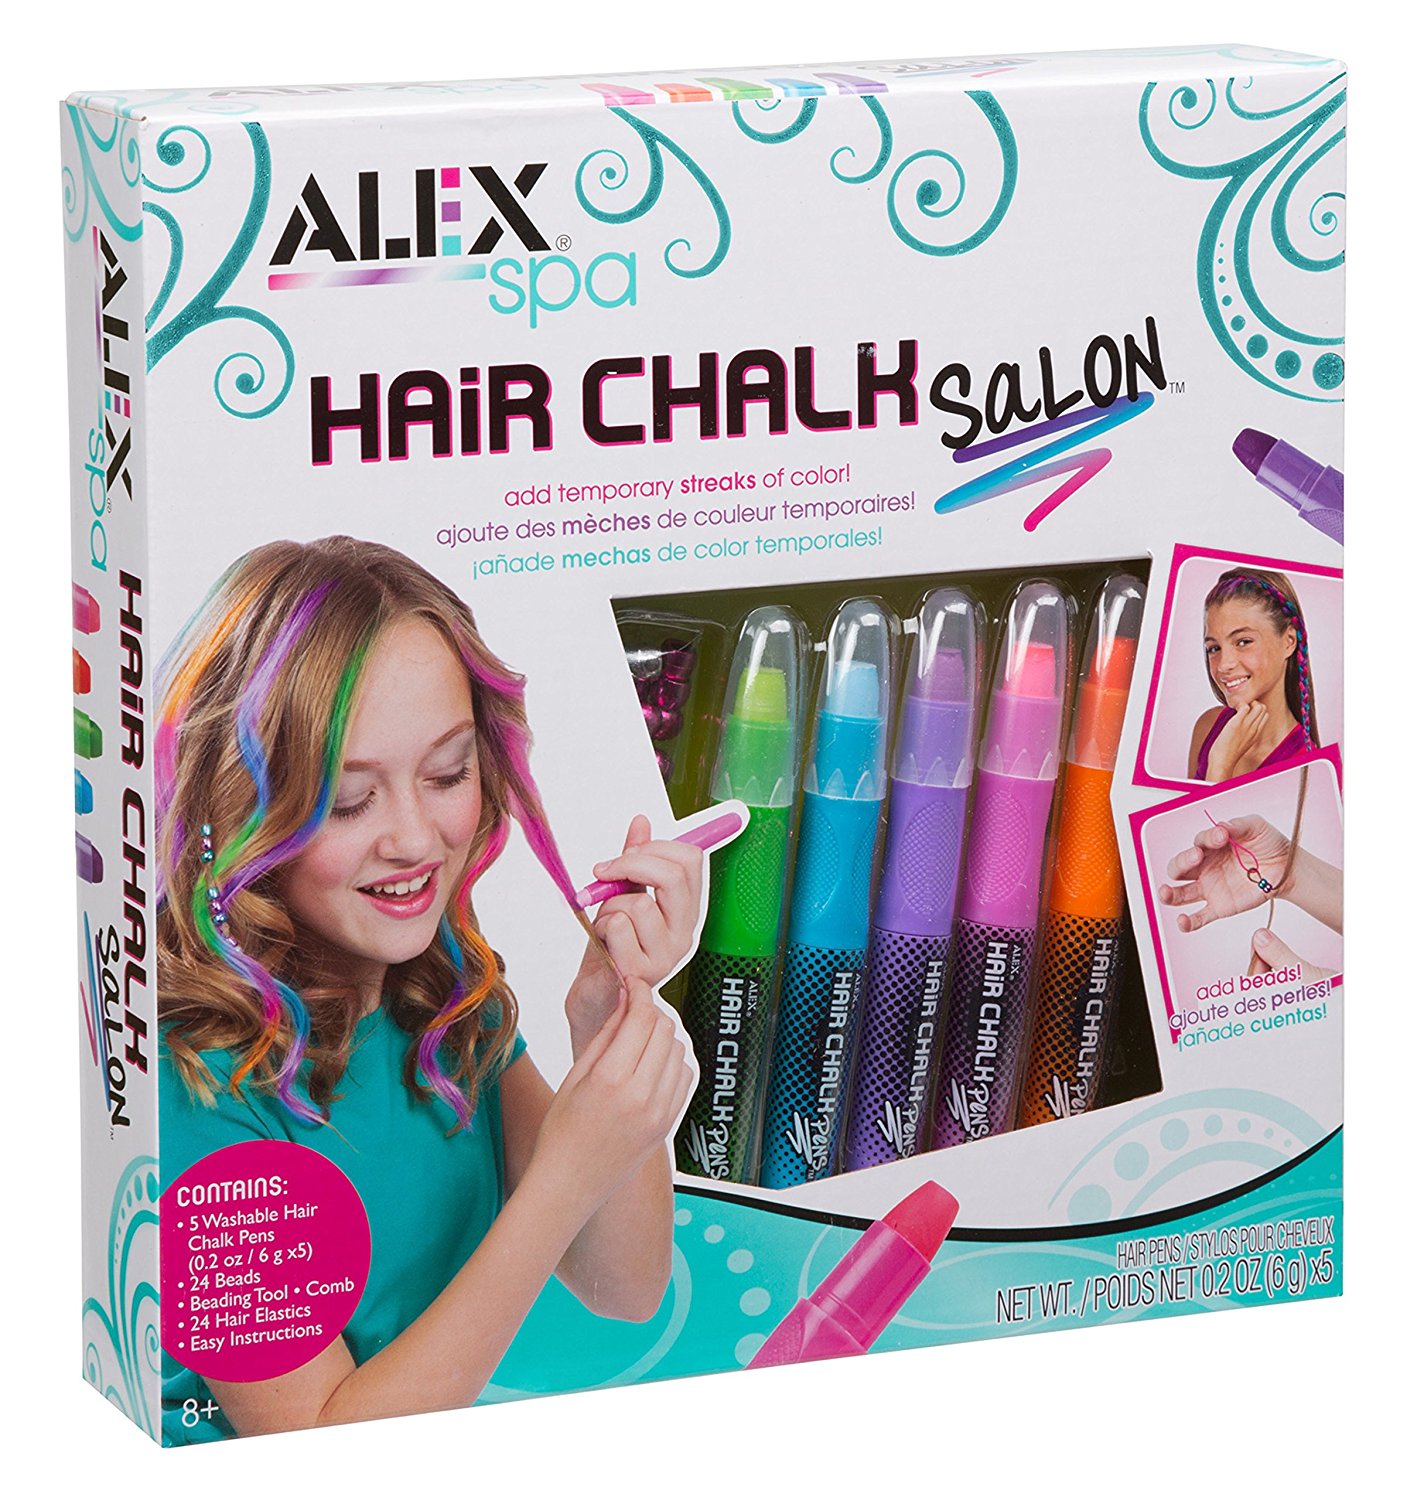 ALEX Spa Hair Chalk Salon – Just $7.33!